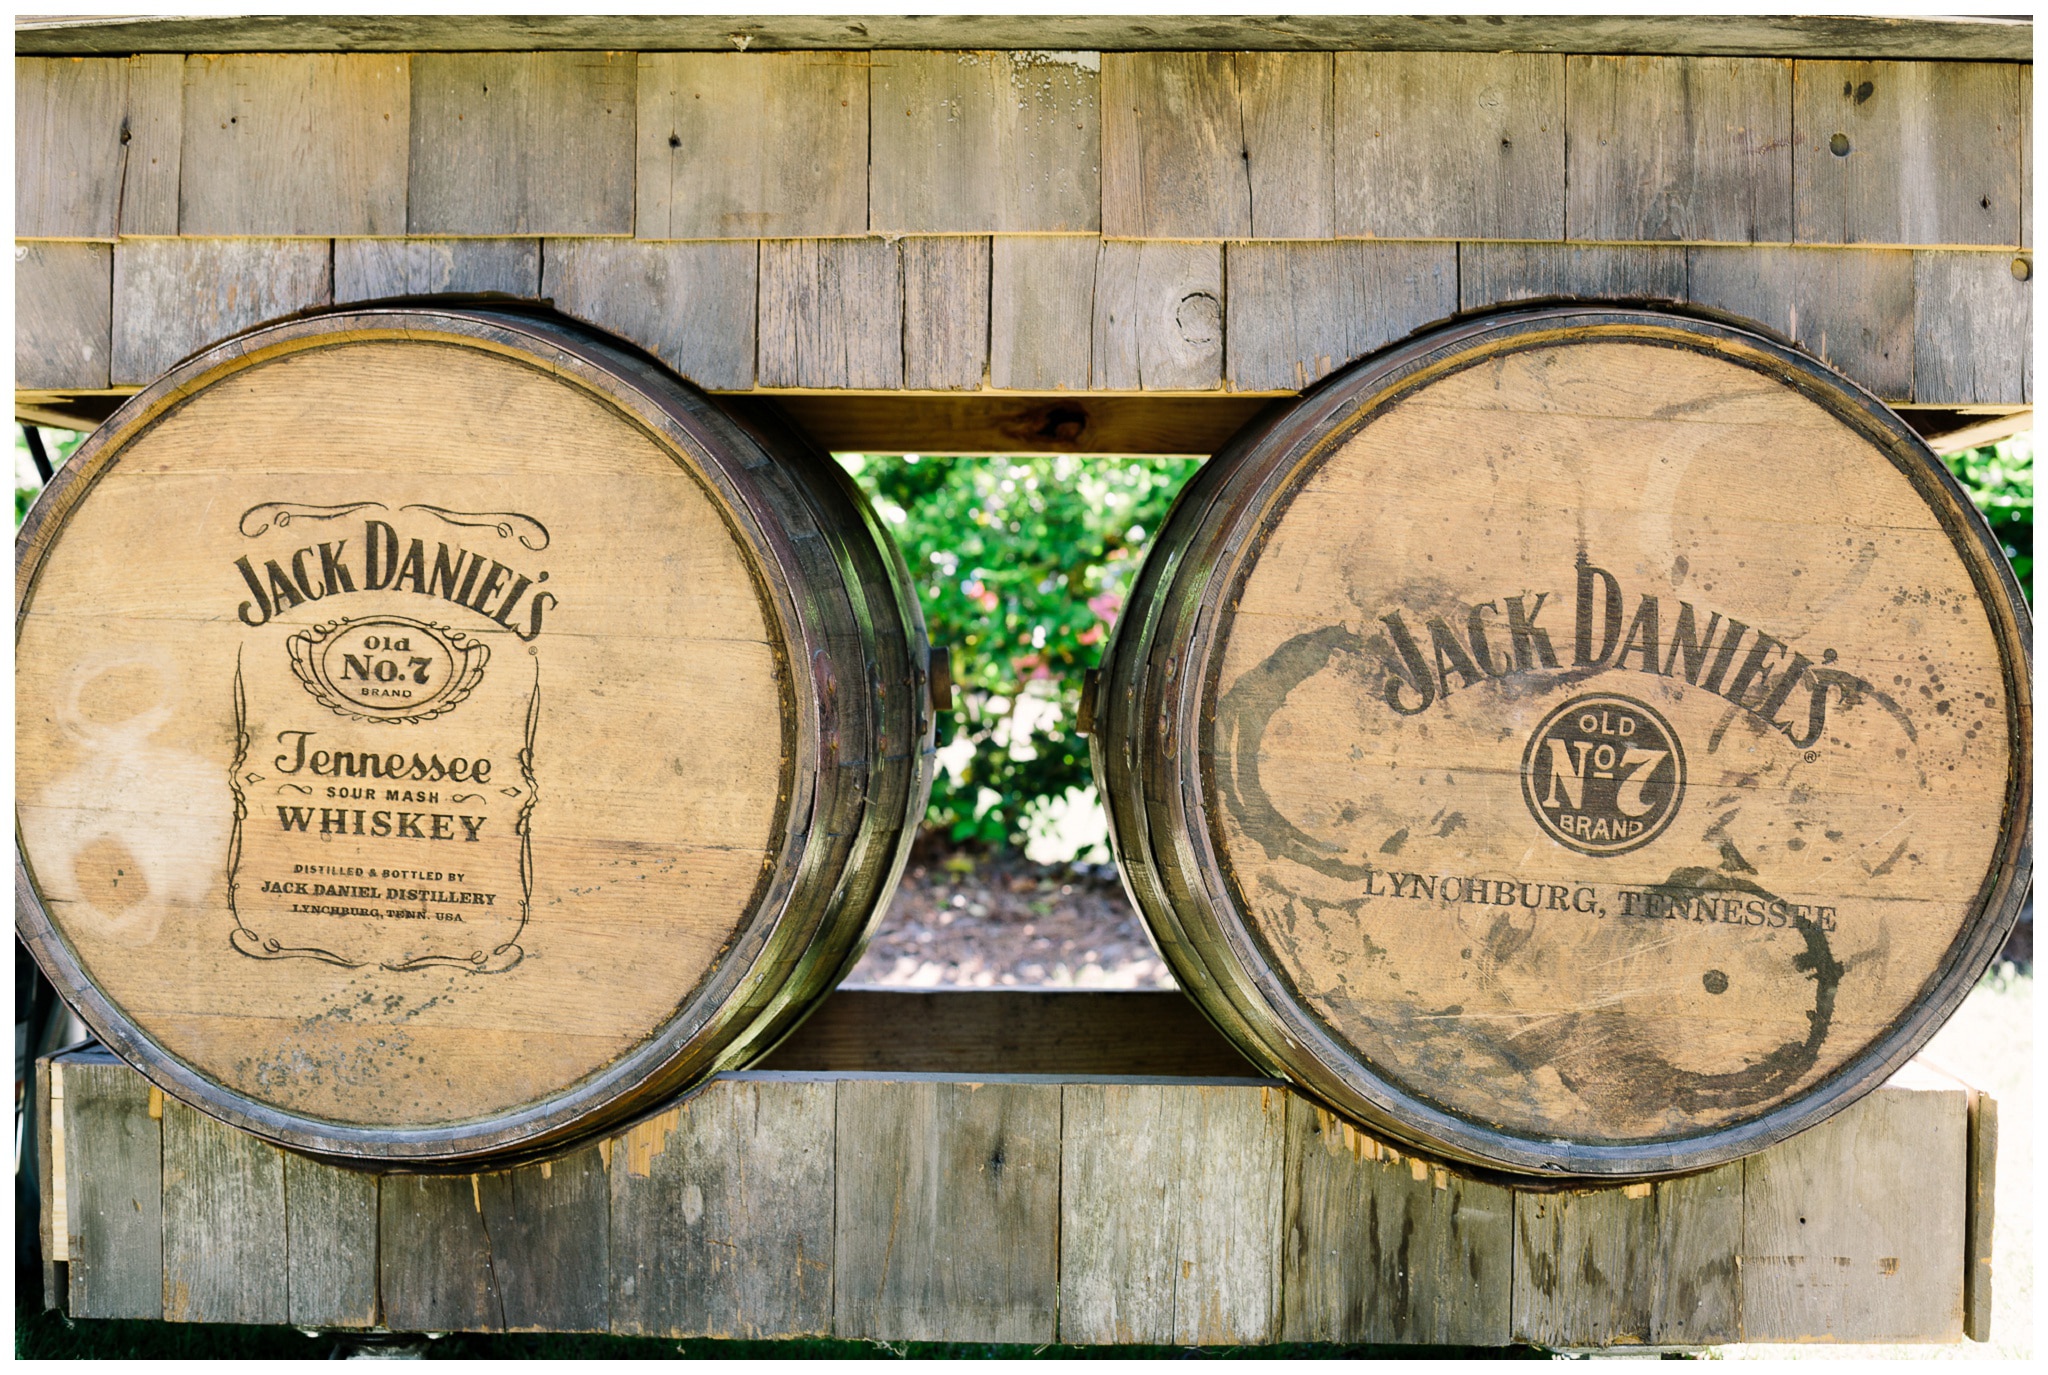 Old Jack Daniel's kegs